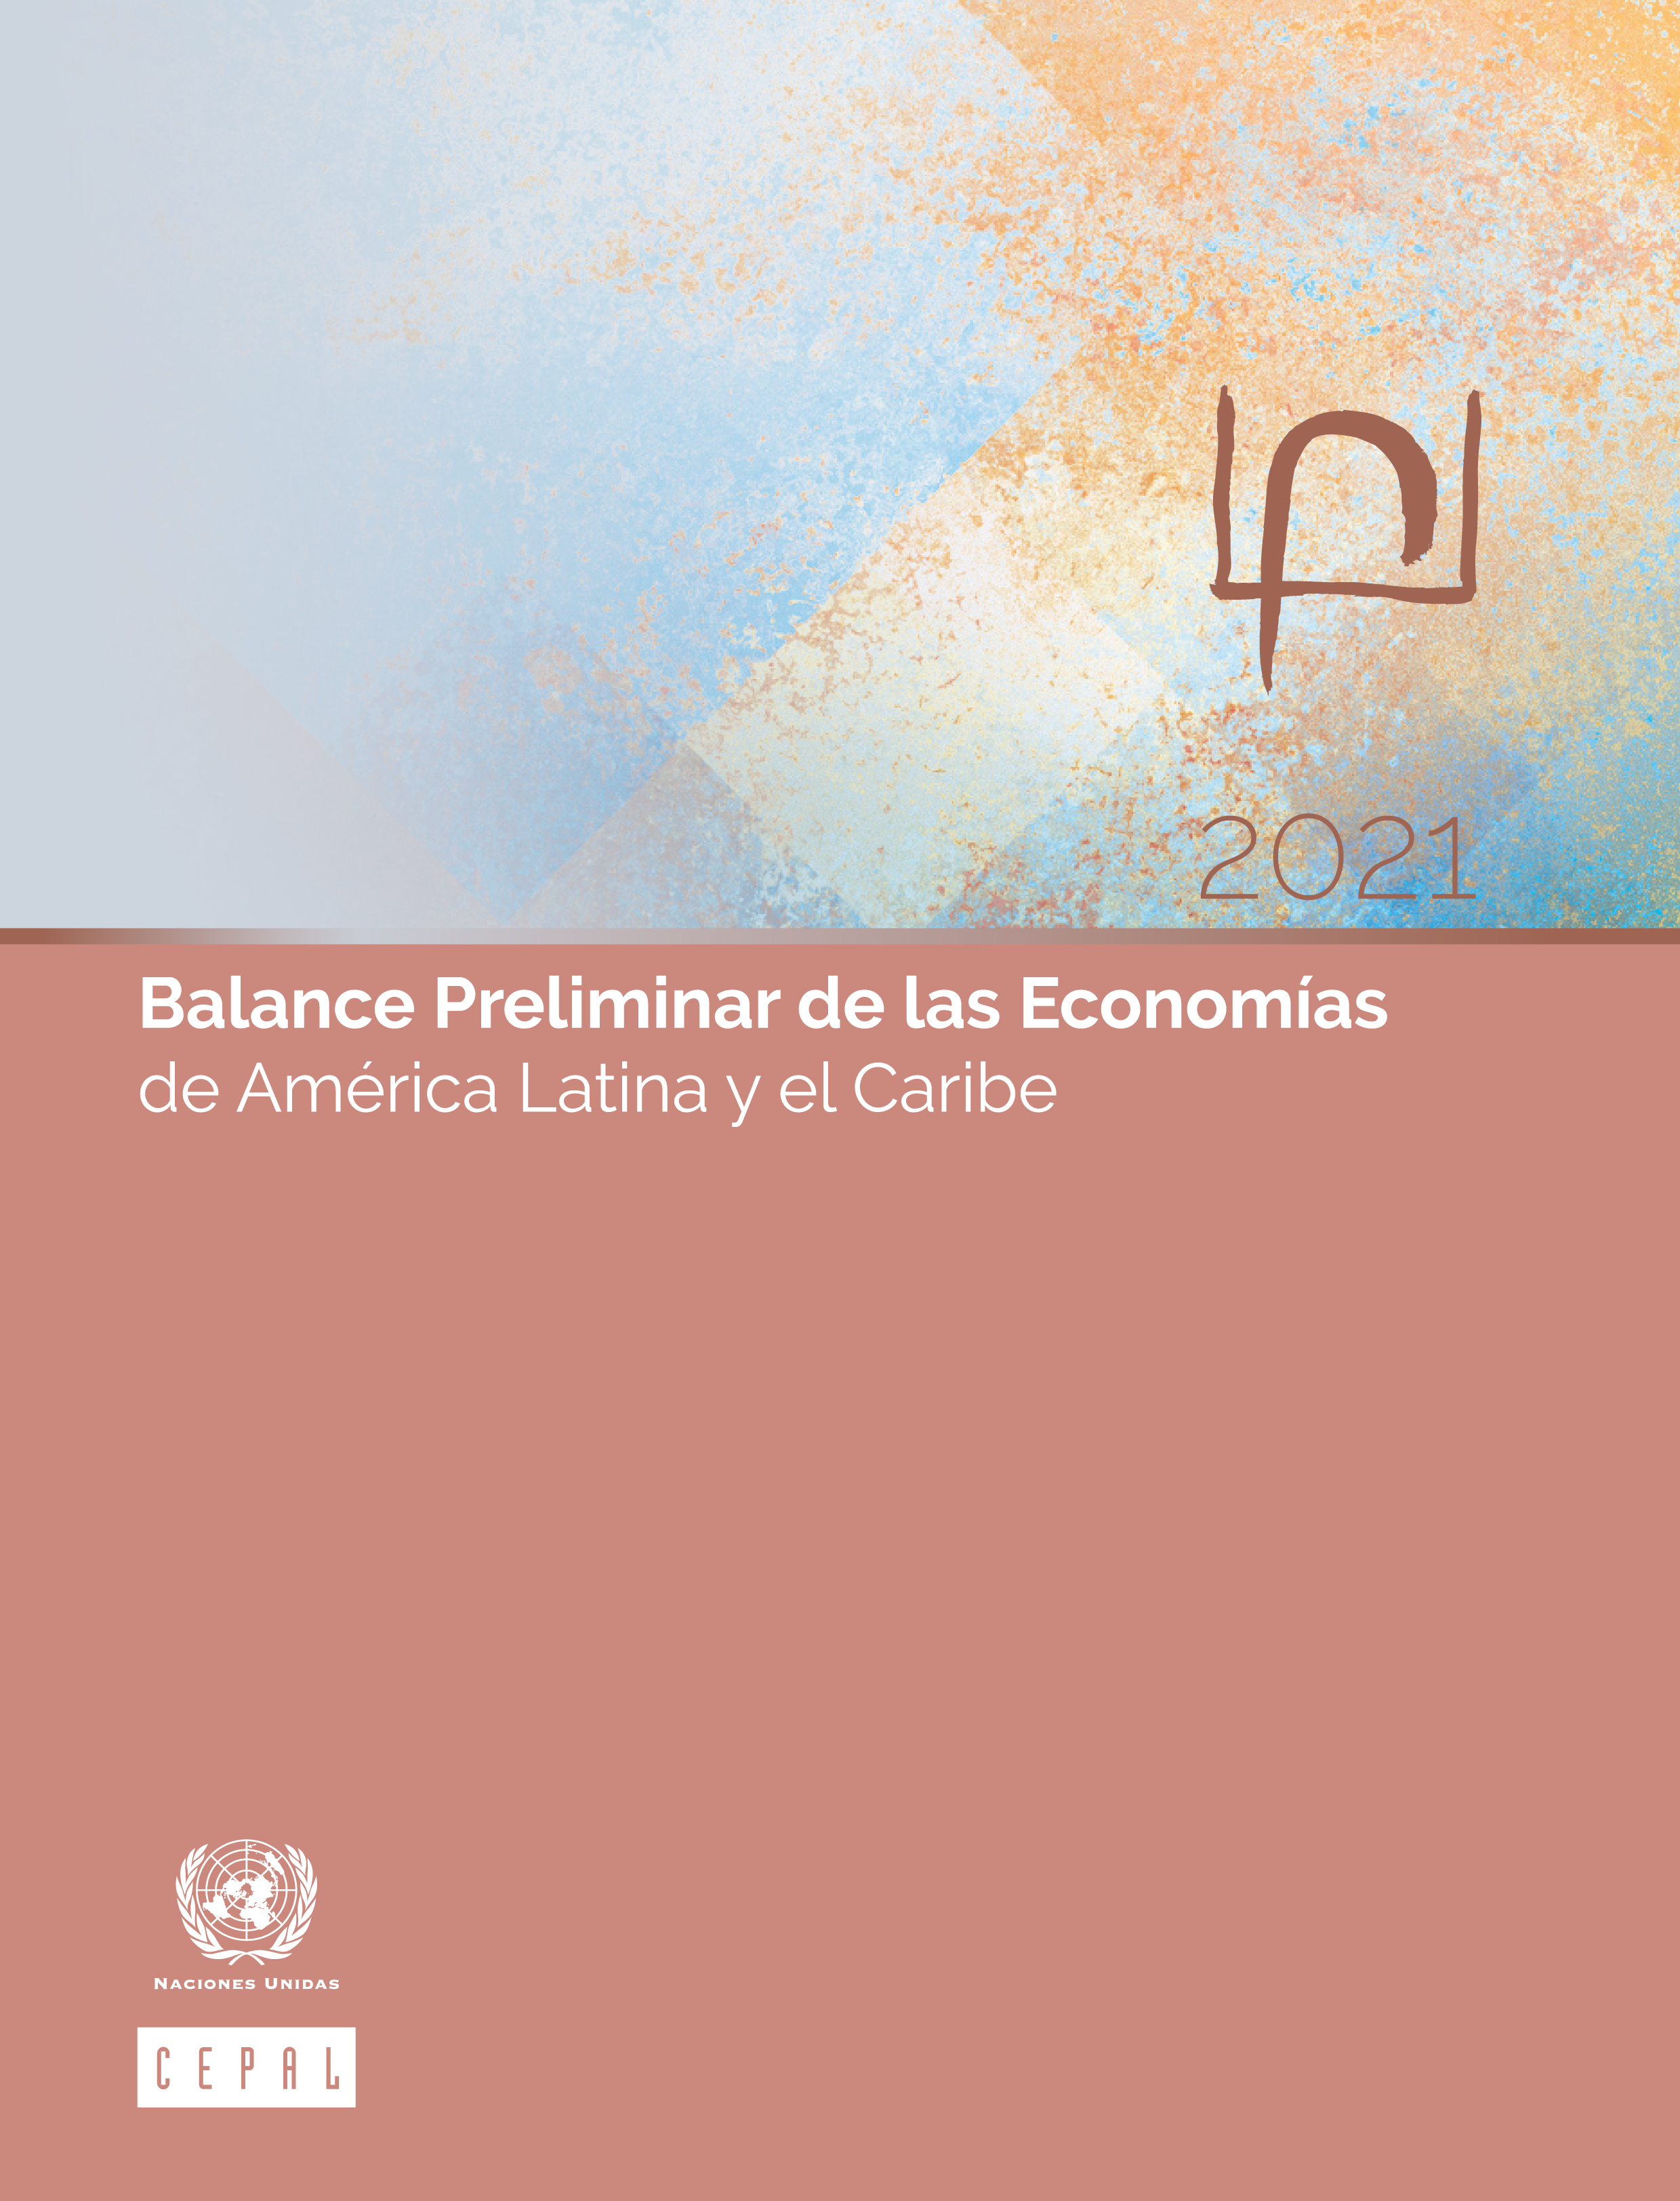 image of Balance Preliminar de las Economías de América Latina y el Caribe 2021